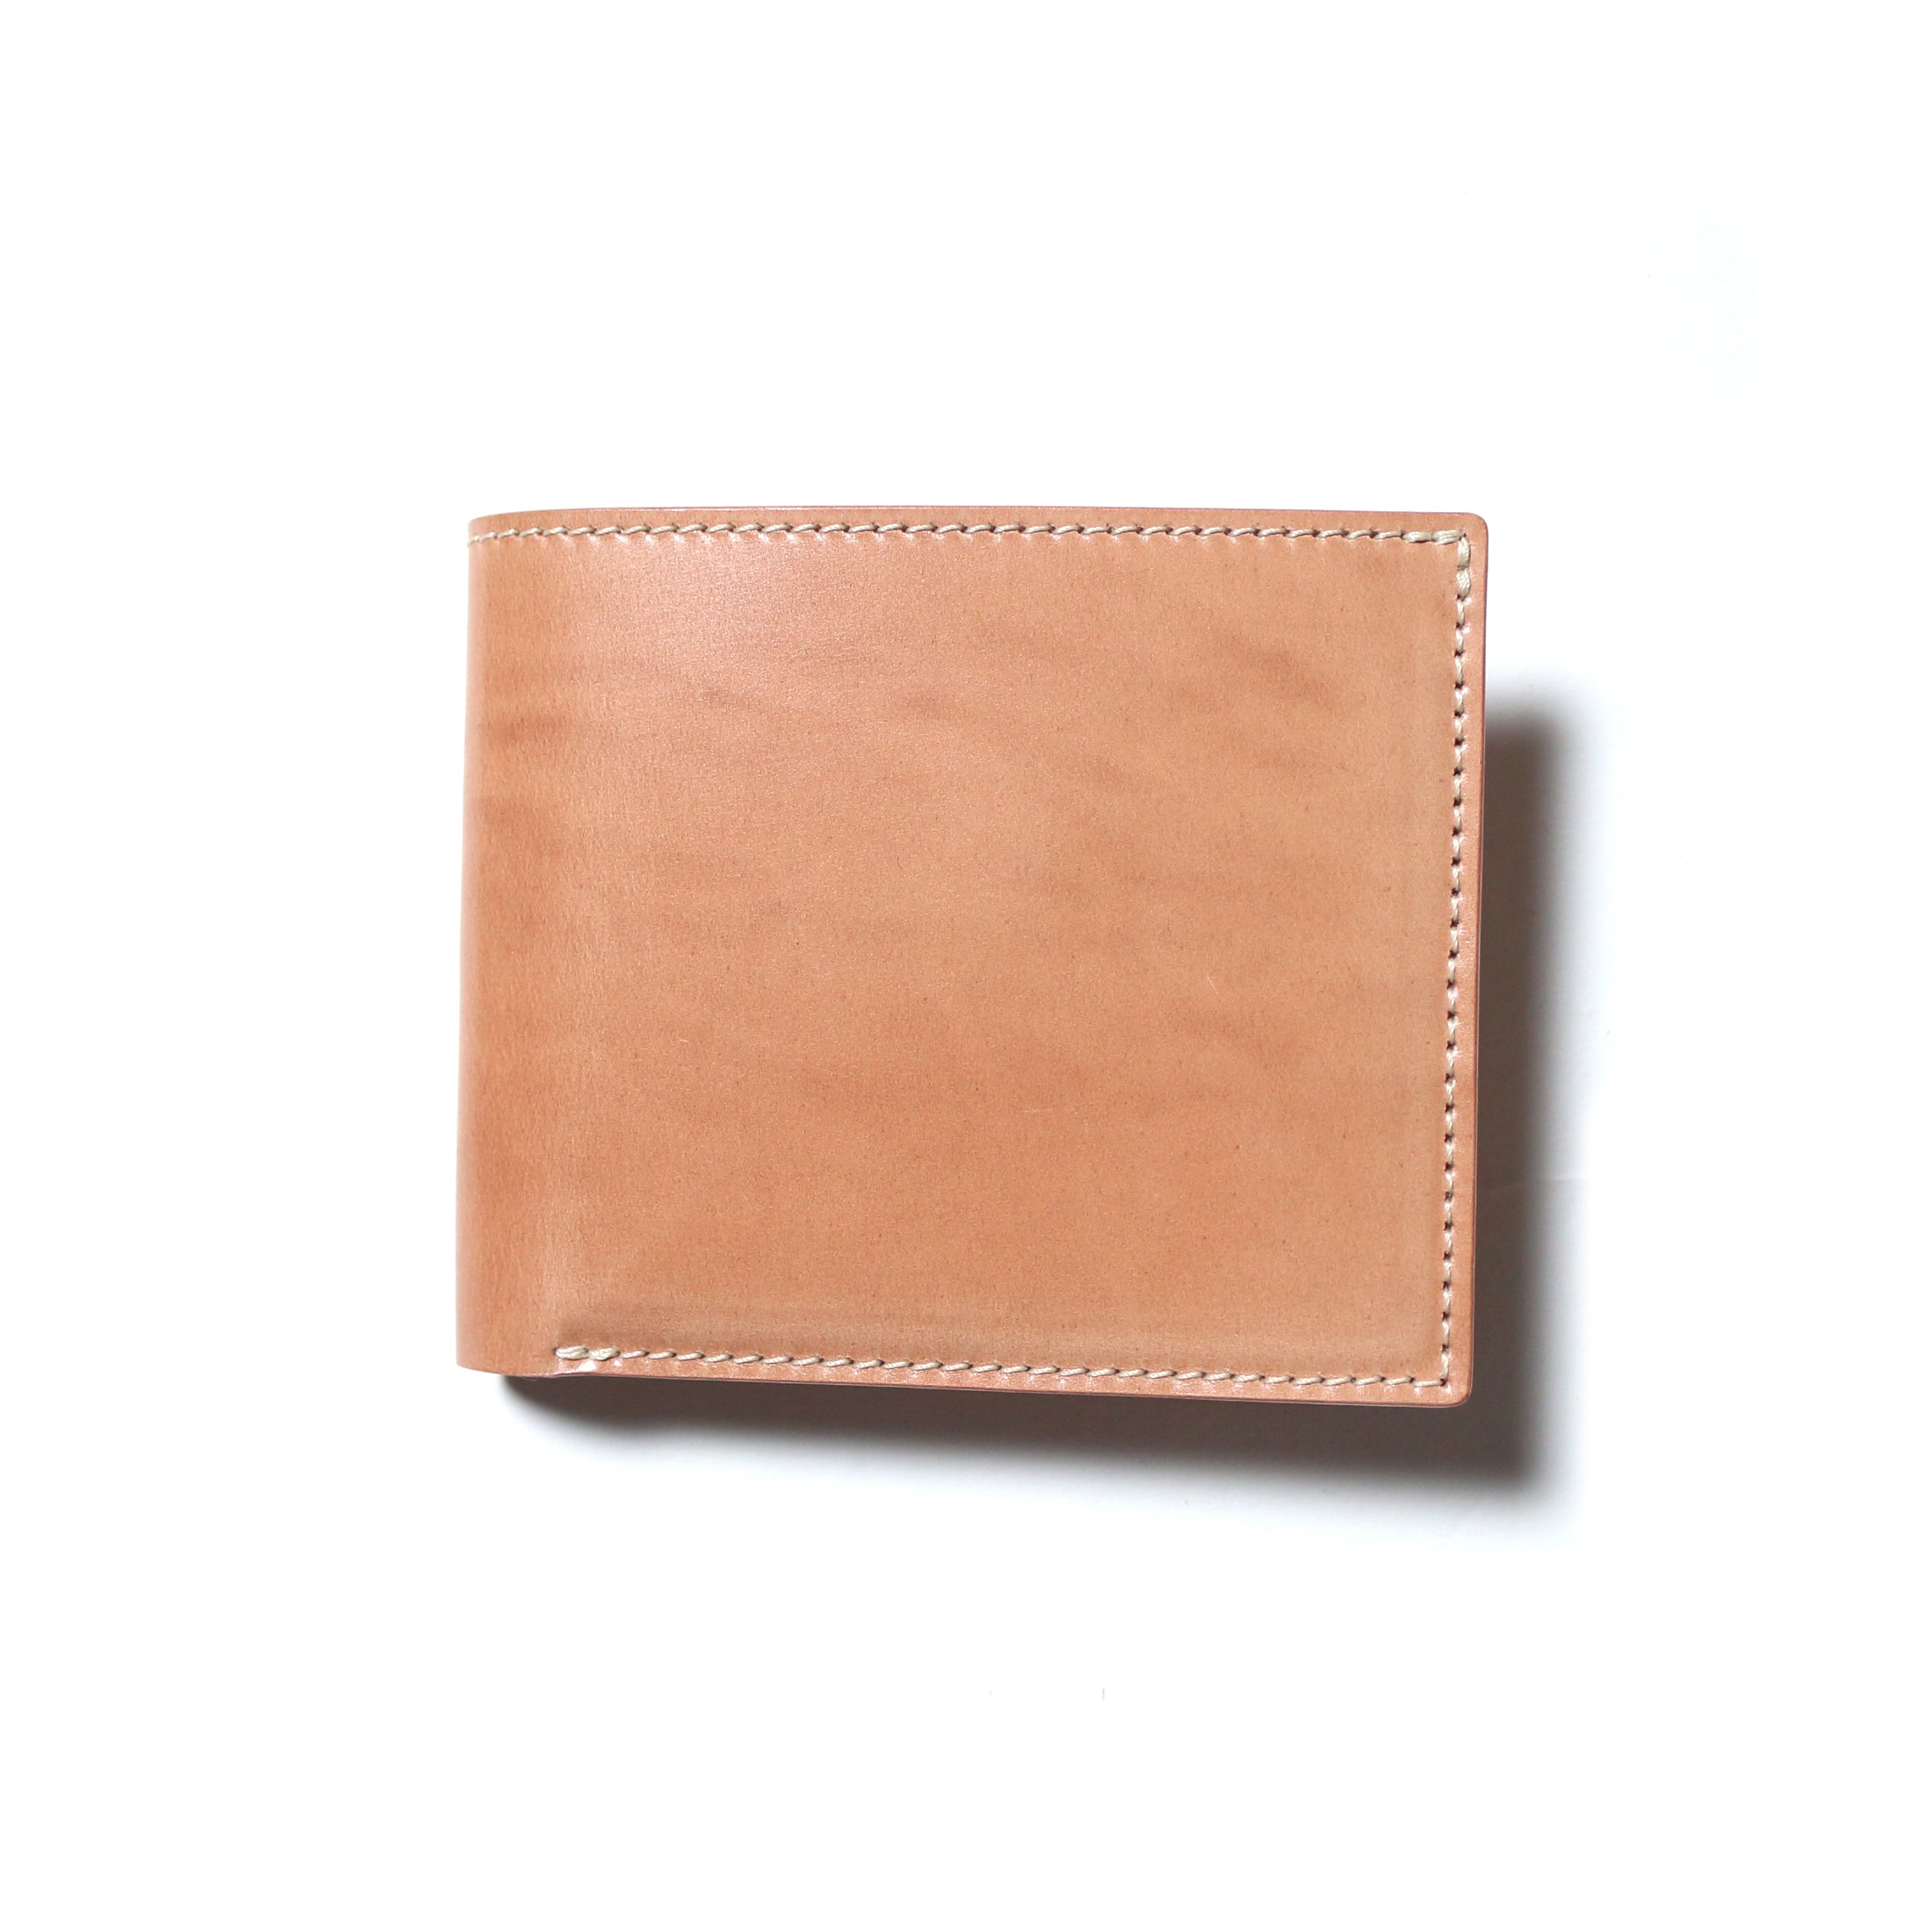 SL194 cordovan  wallet